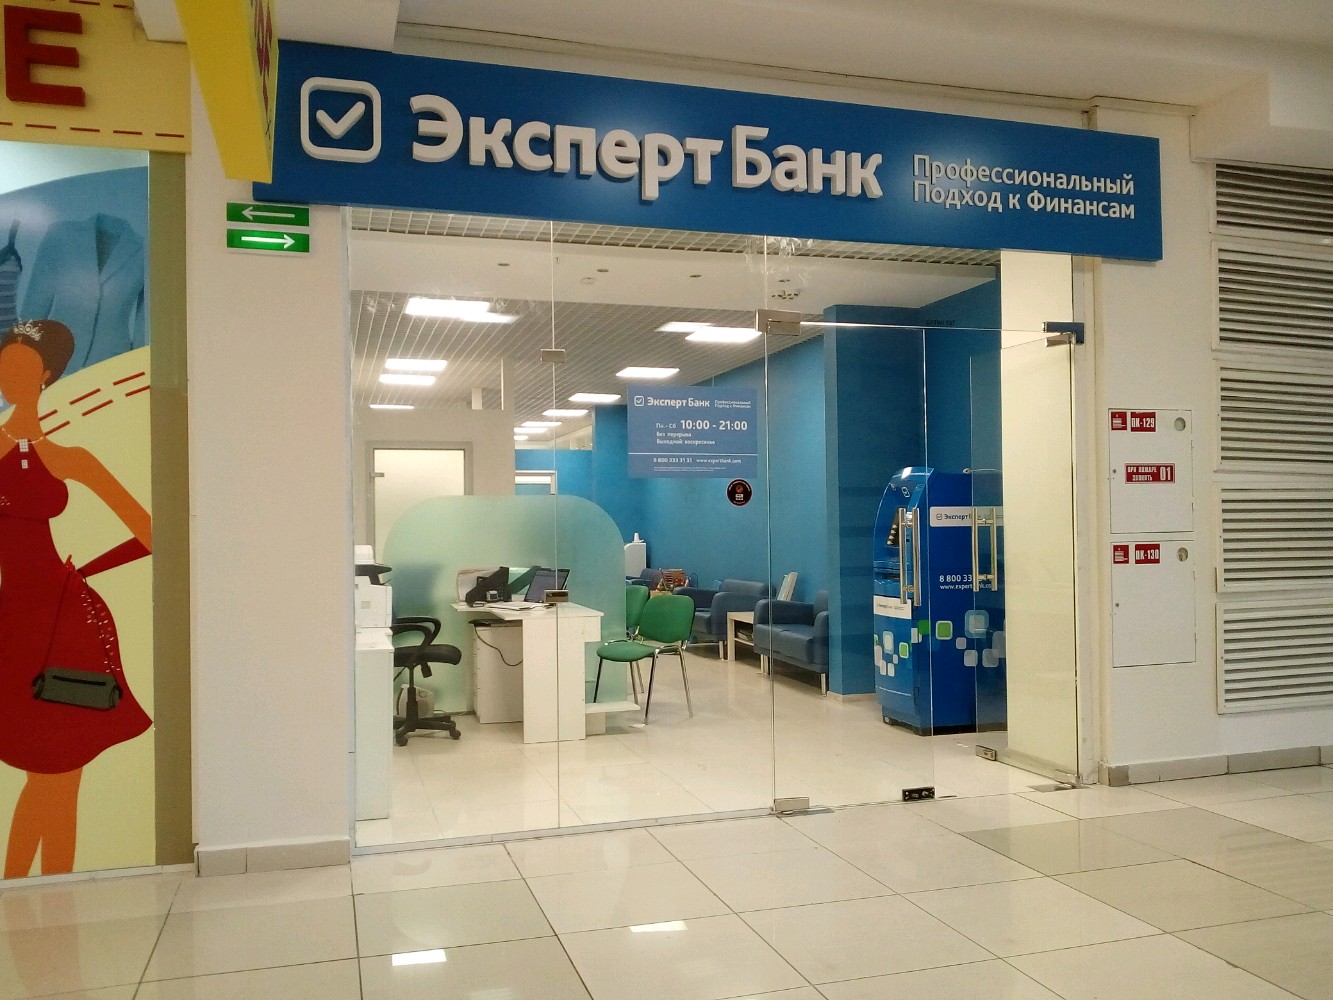 Просто банк россия. Эксперт банк. Профессиональный банк. Эксперт банк картинки.